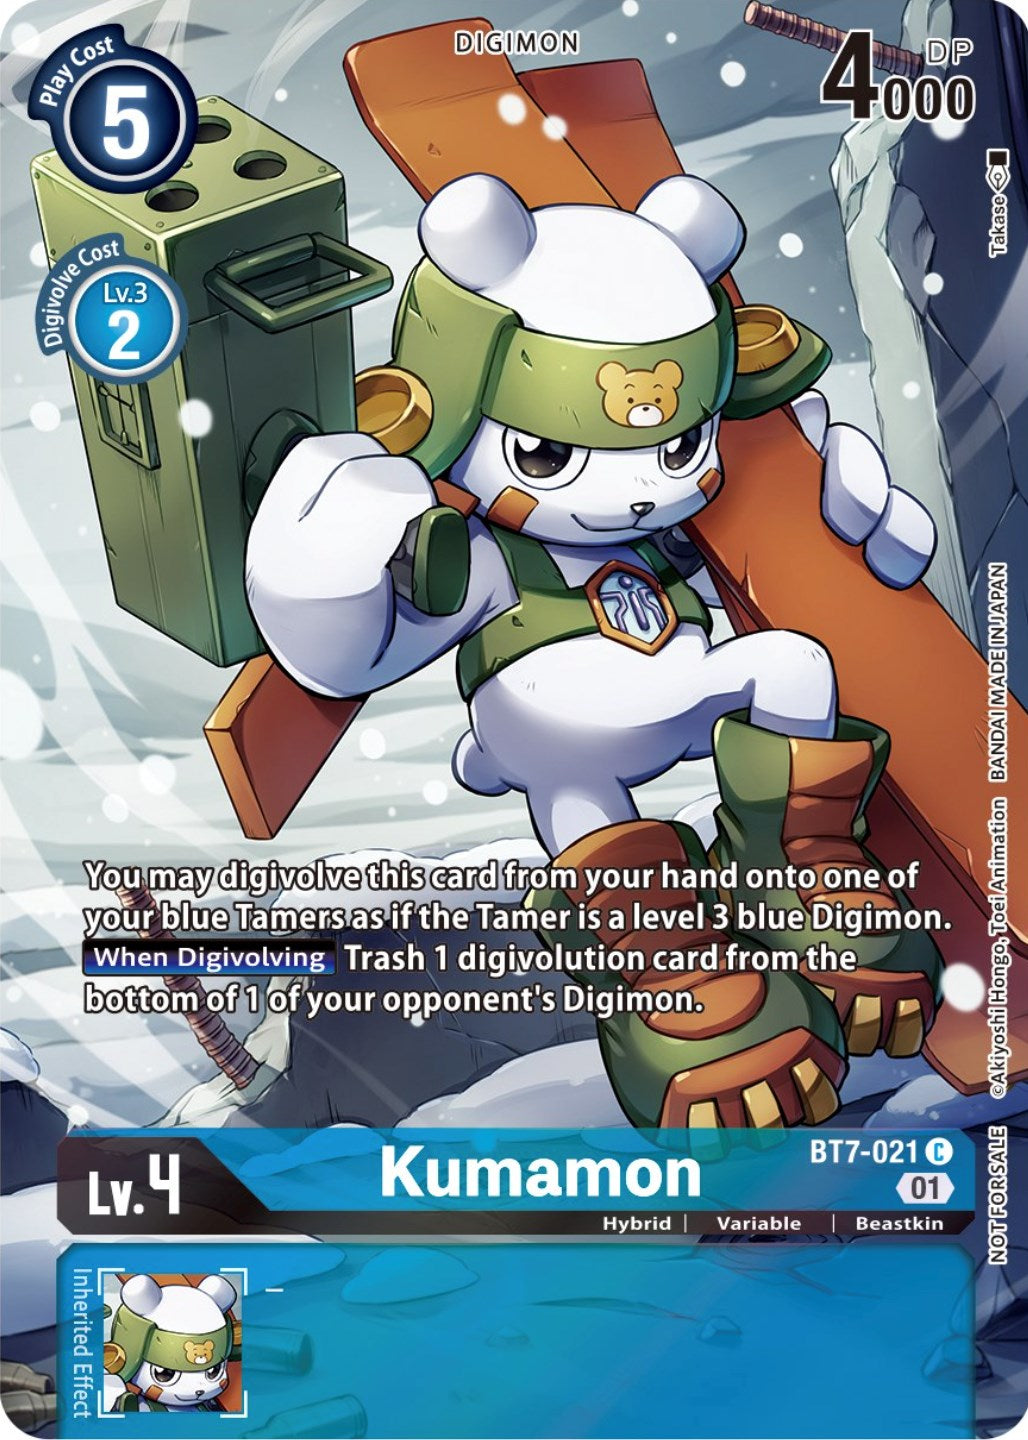 Kumamon [BT7-021] (2nd Anniversary Frontier Card) [Next Adventure Promos] | Shuffle n Cut Hobbies & Games